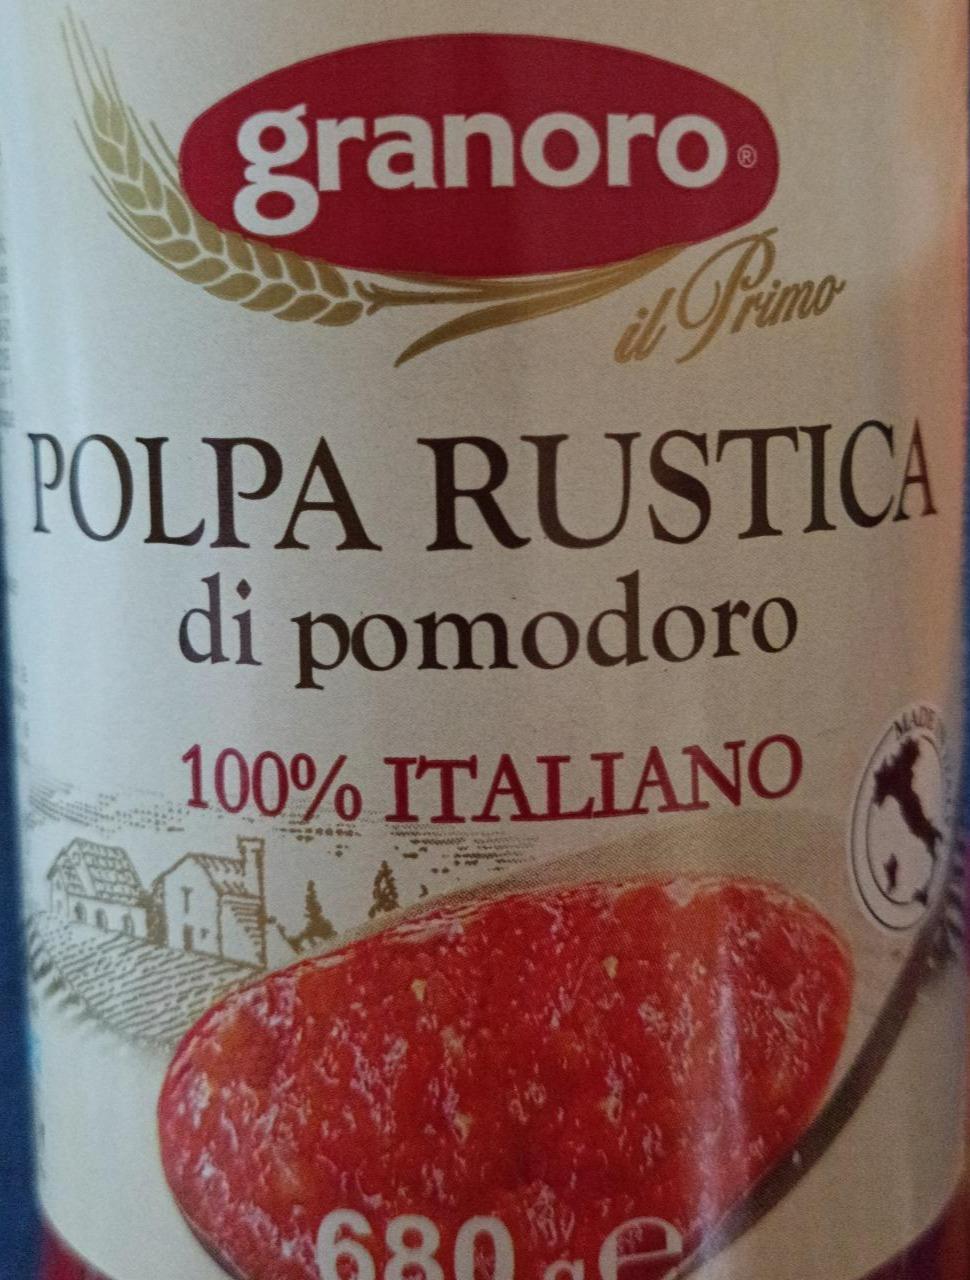 Fotografie - Polpa Rustica di pomodoro 100% Italiano Granoro